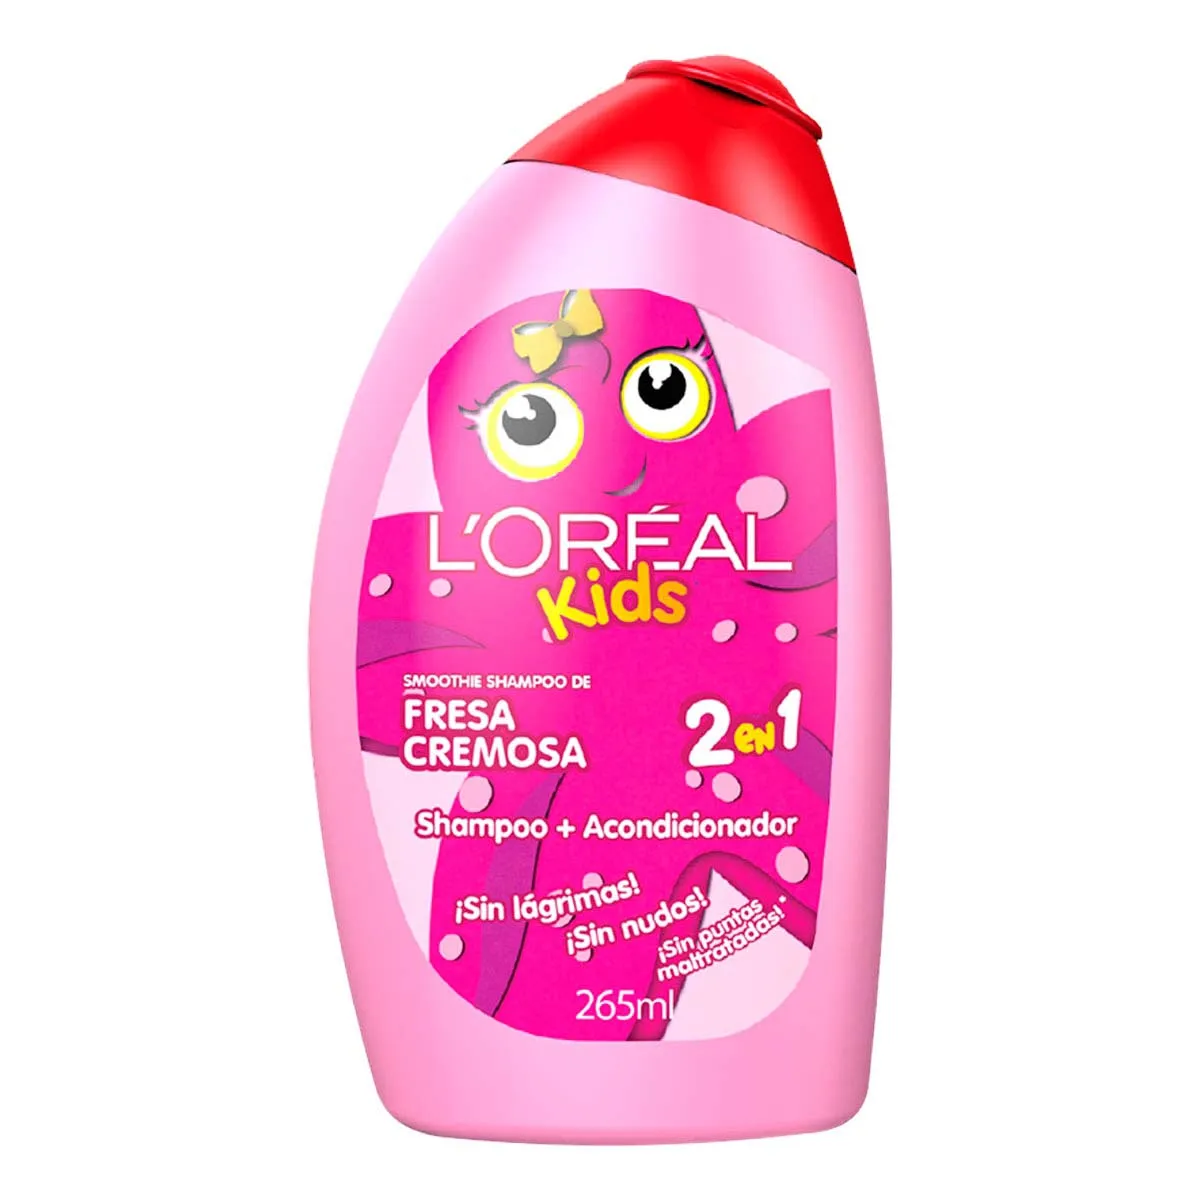 L'Oreal shampoo